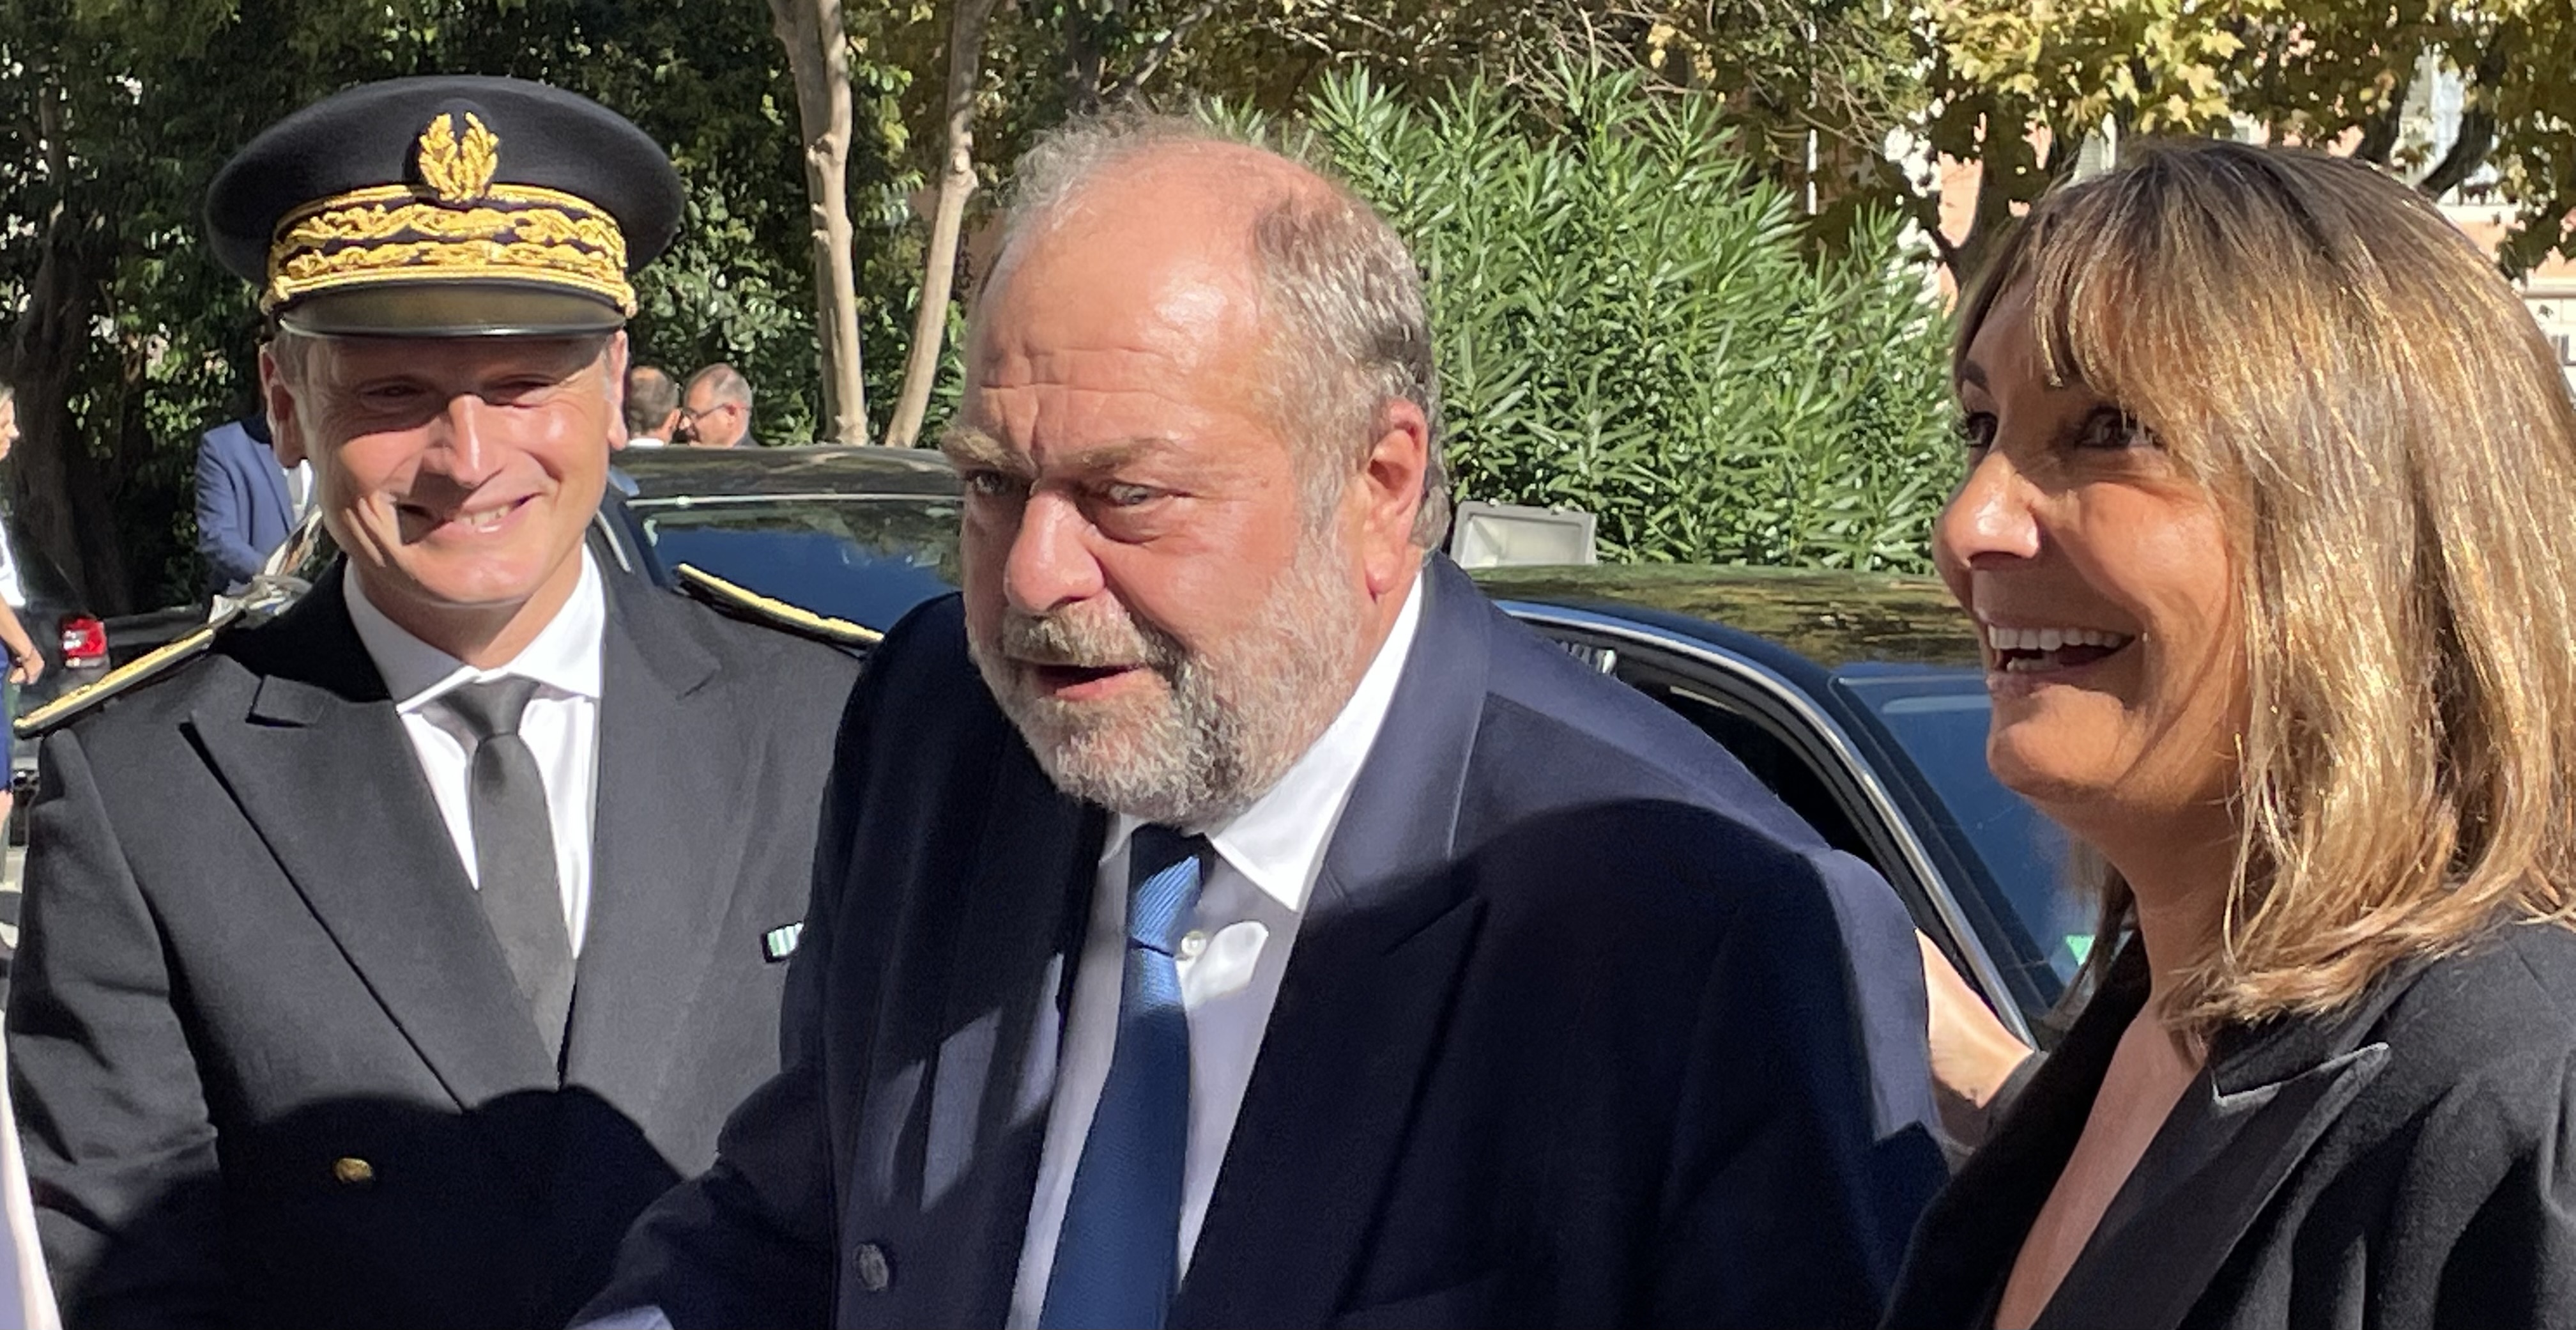 Le Garde des Sceaux à son arrivée au Palais de justice de Bastia, accueilli par le Préfet de Haute-Corse et la présidente de la Cour d'appel. Photo CNI.